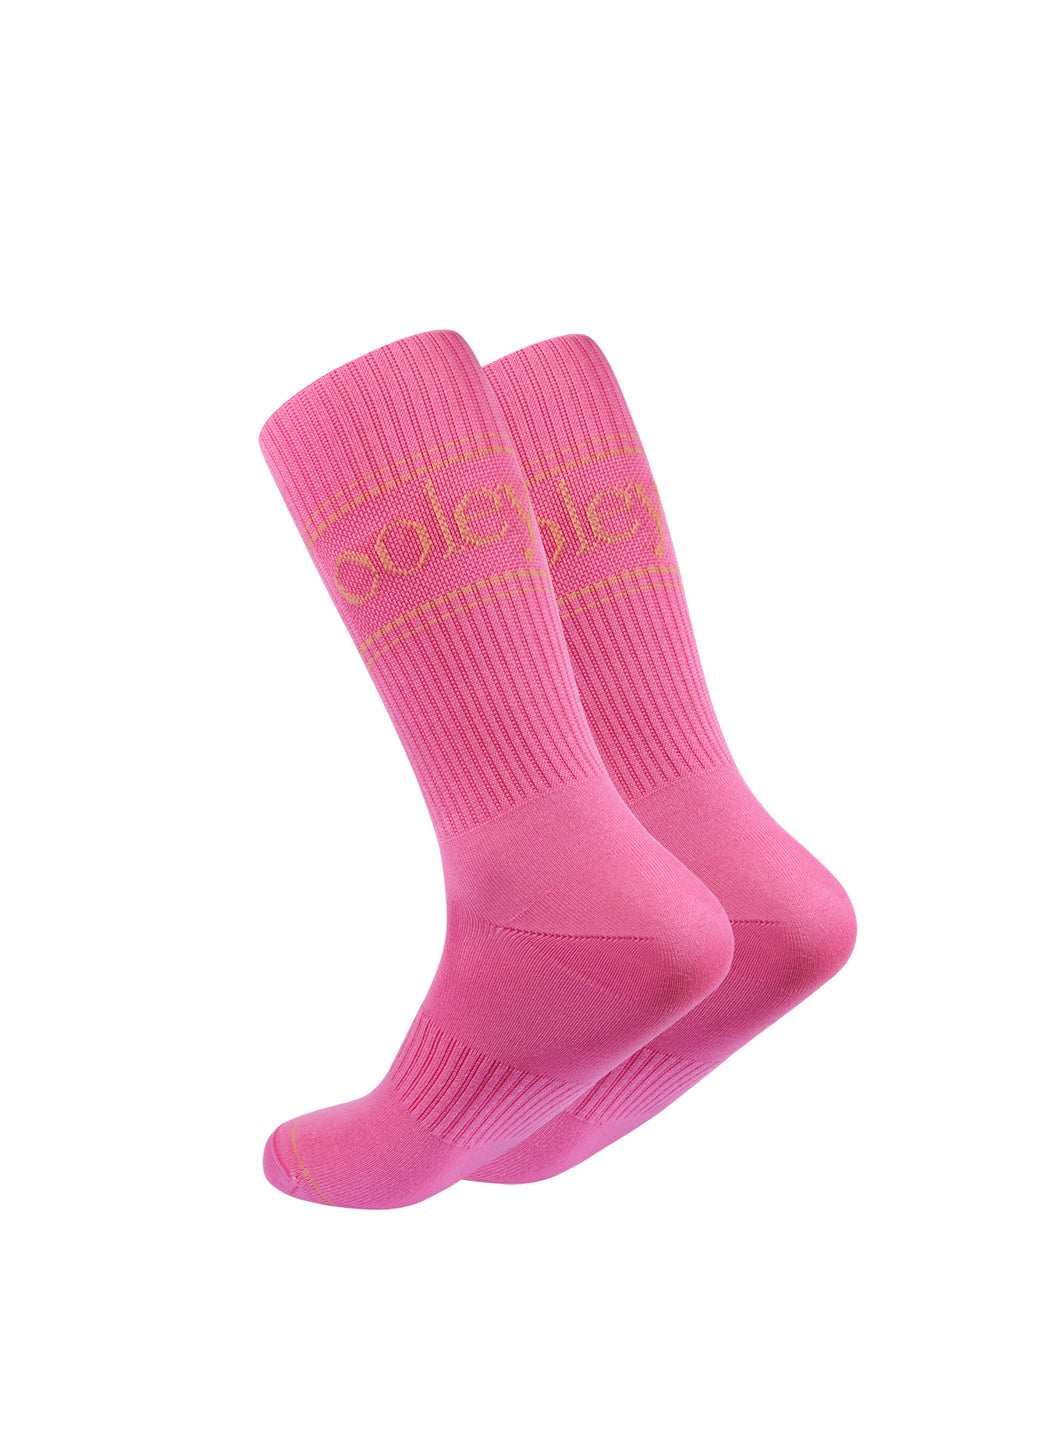 OOLEY Socks Pastel Pink